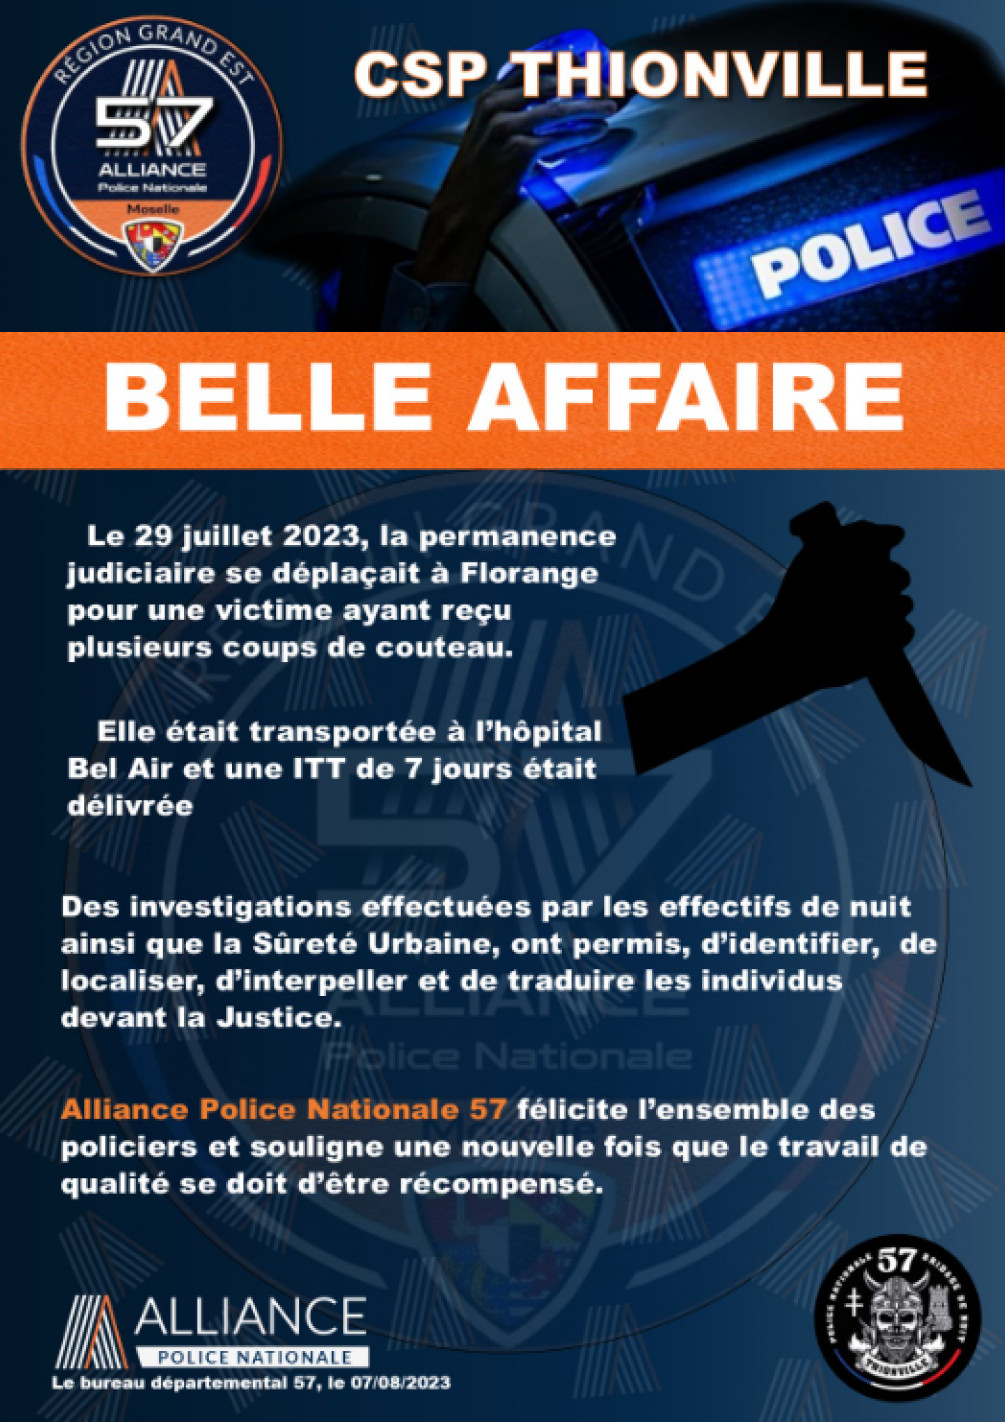 Belle affaire Csp Thionville (2)